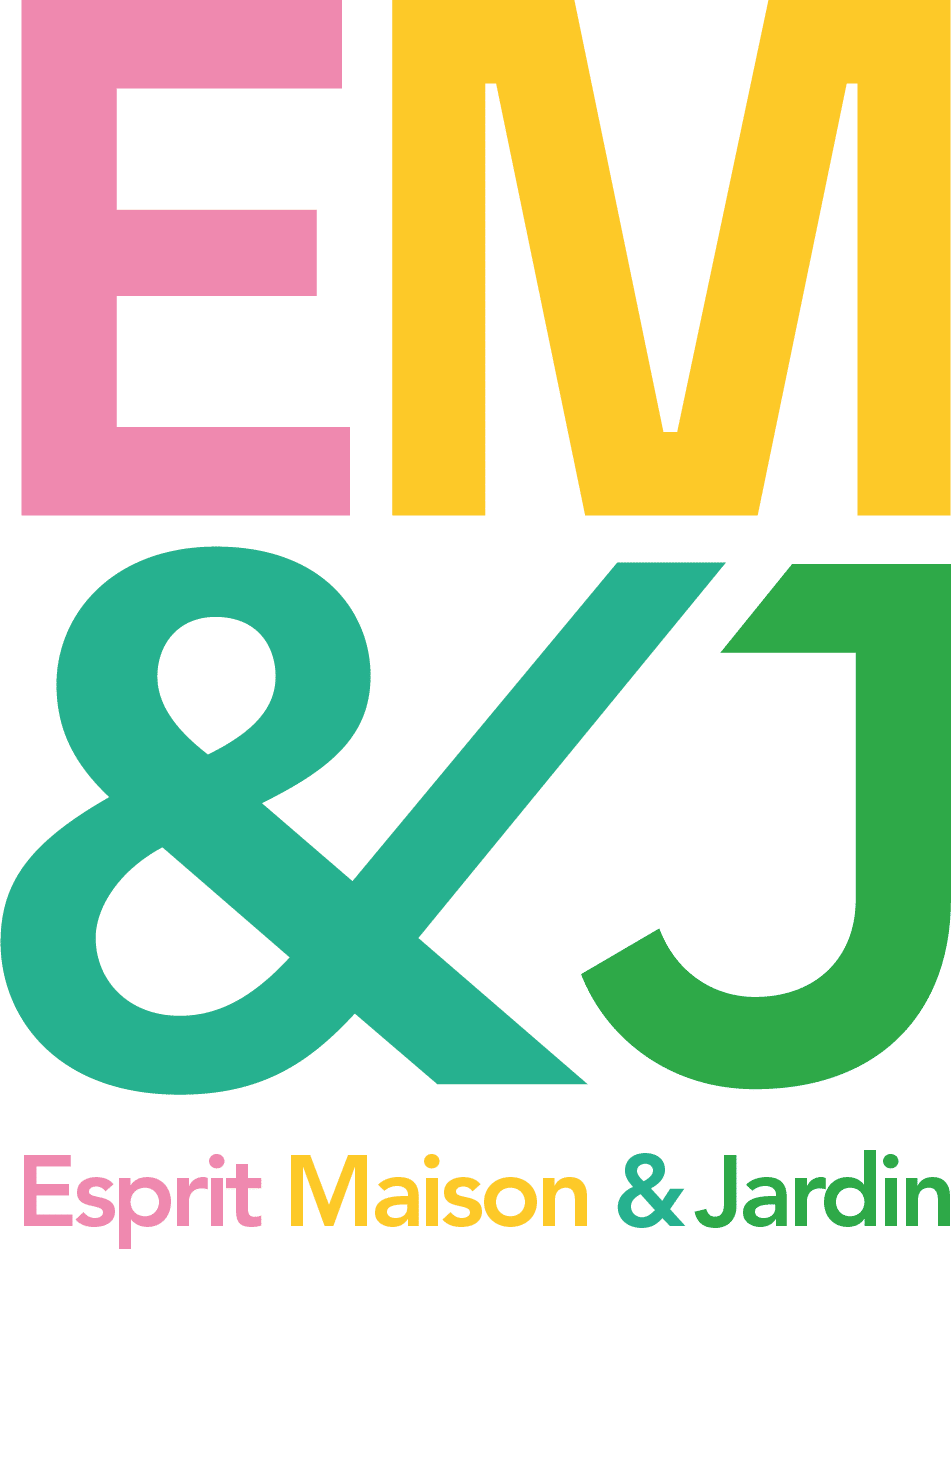 法国雷恩家具和装饰品展Salon Esprit Maison & Jardin